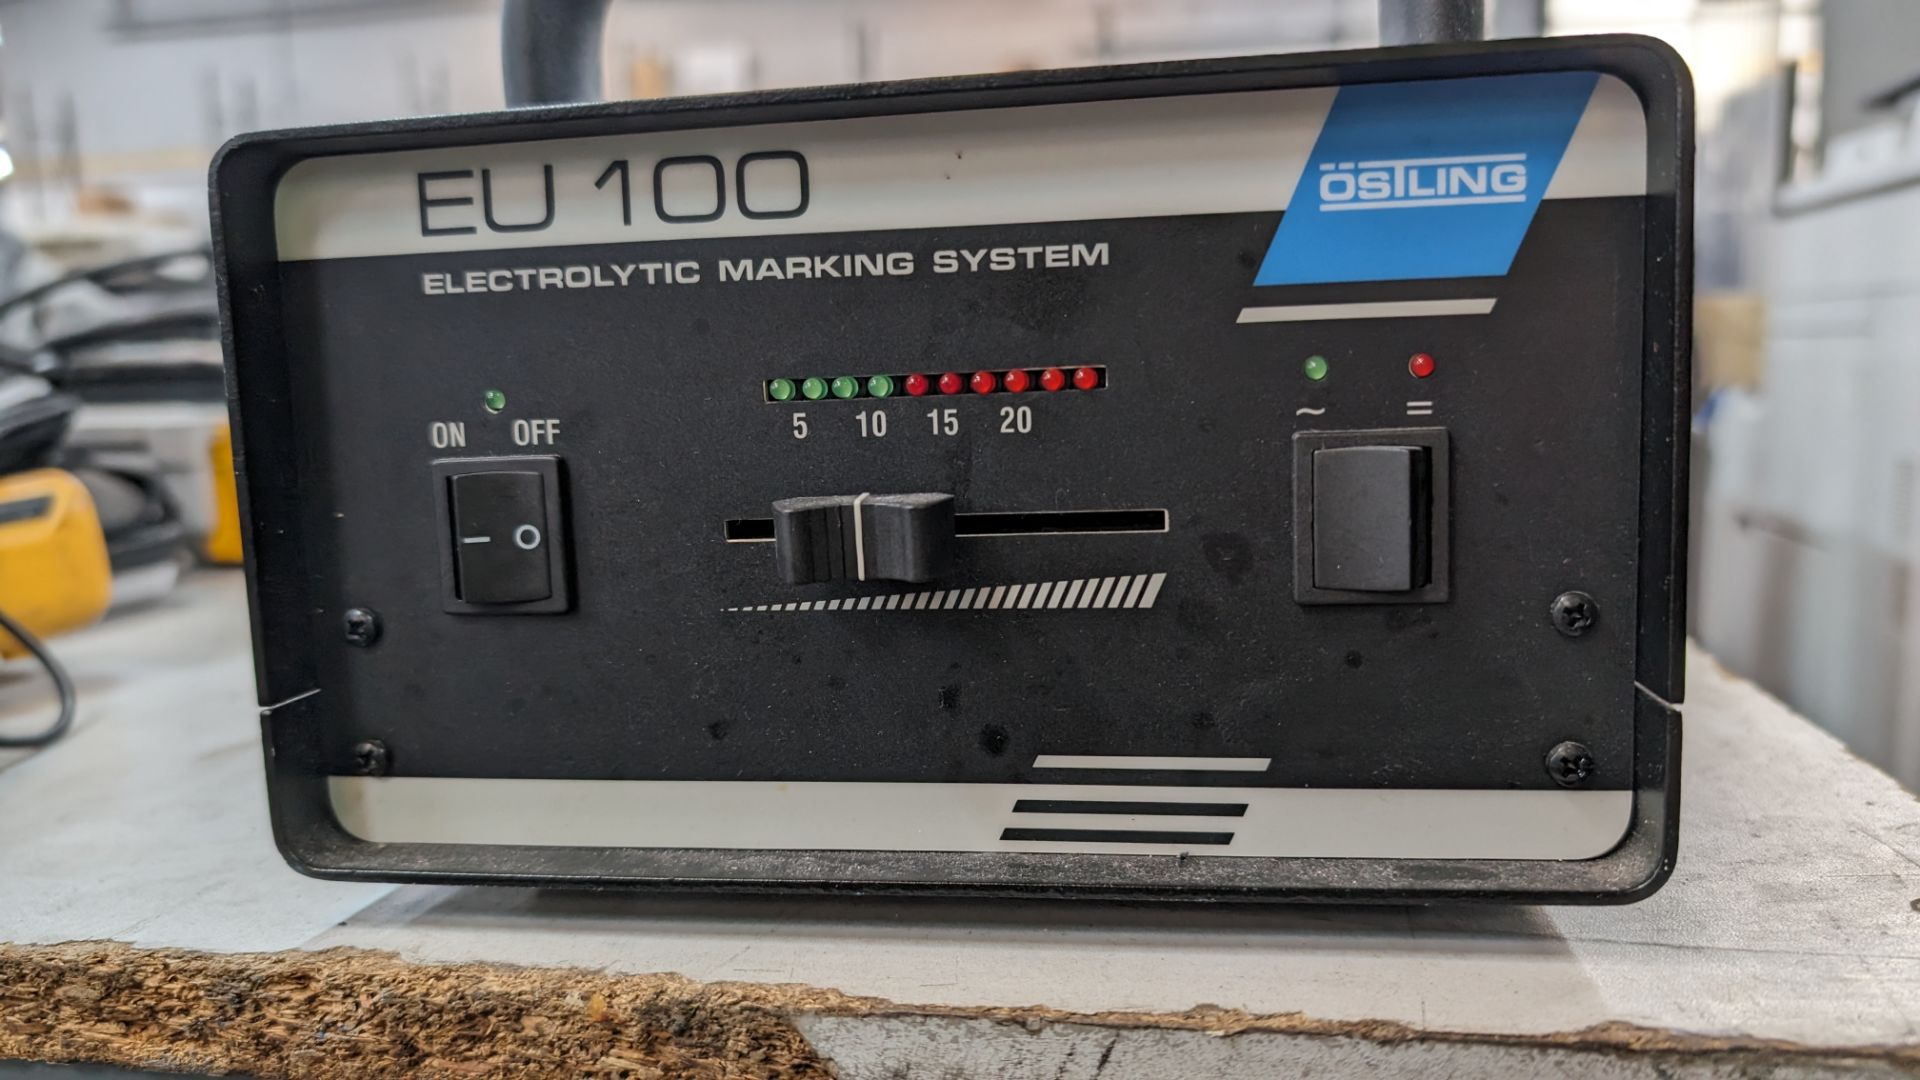 Ostling electrolytic marking system model EU100 - Image 4 of 6